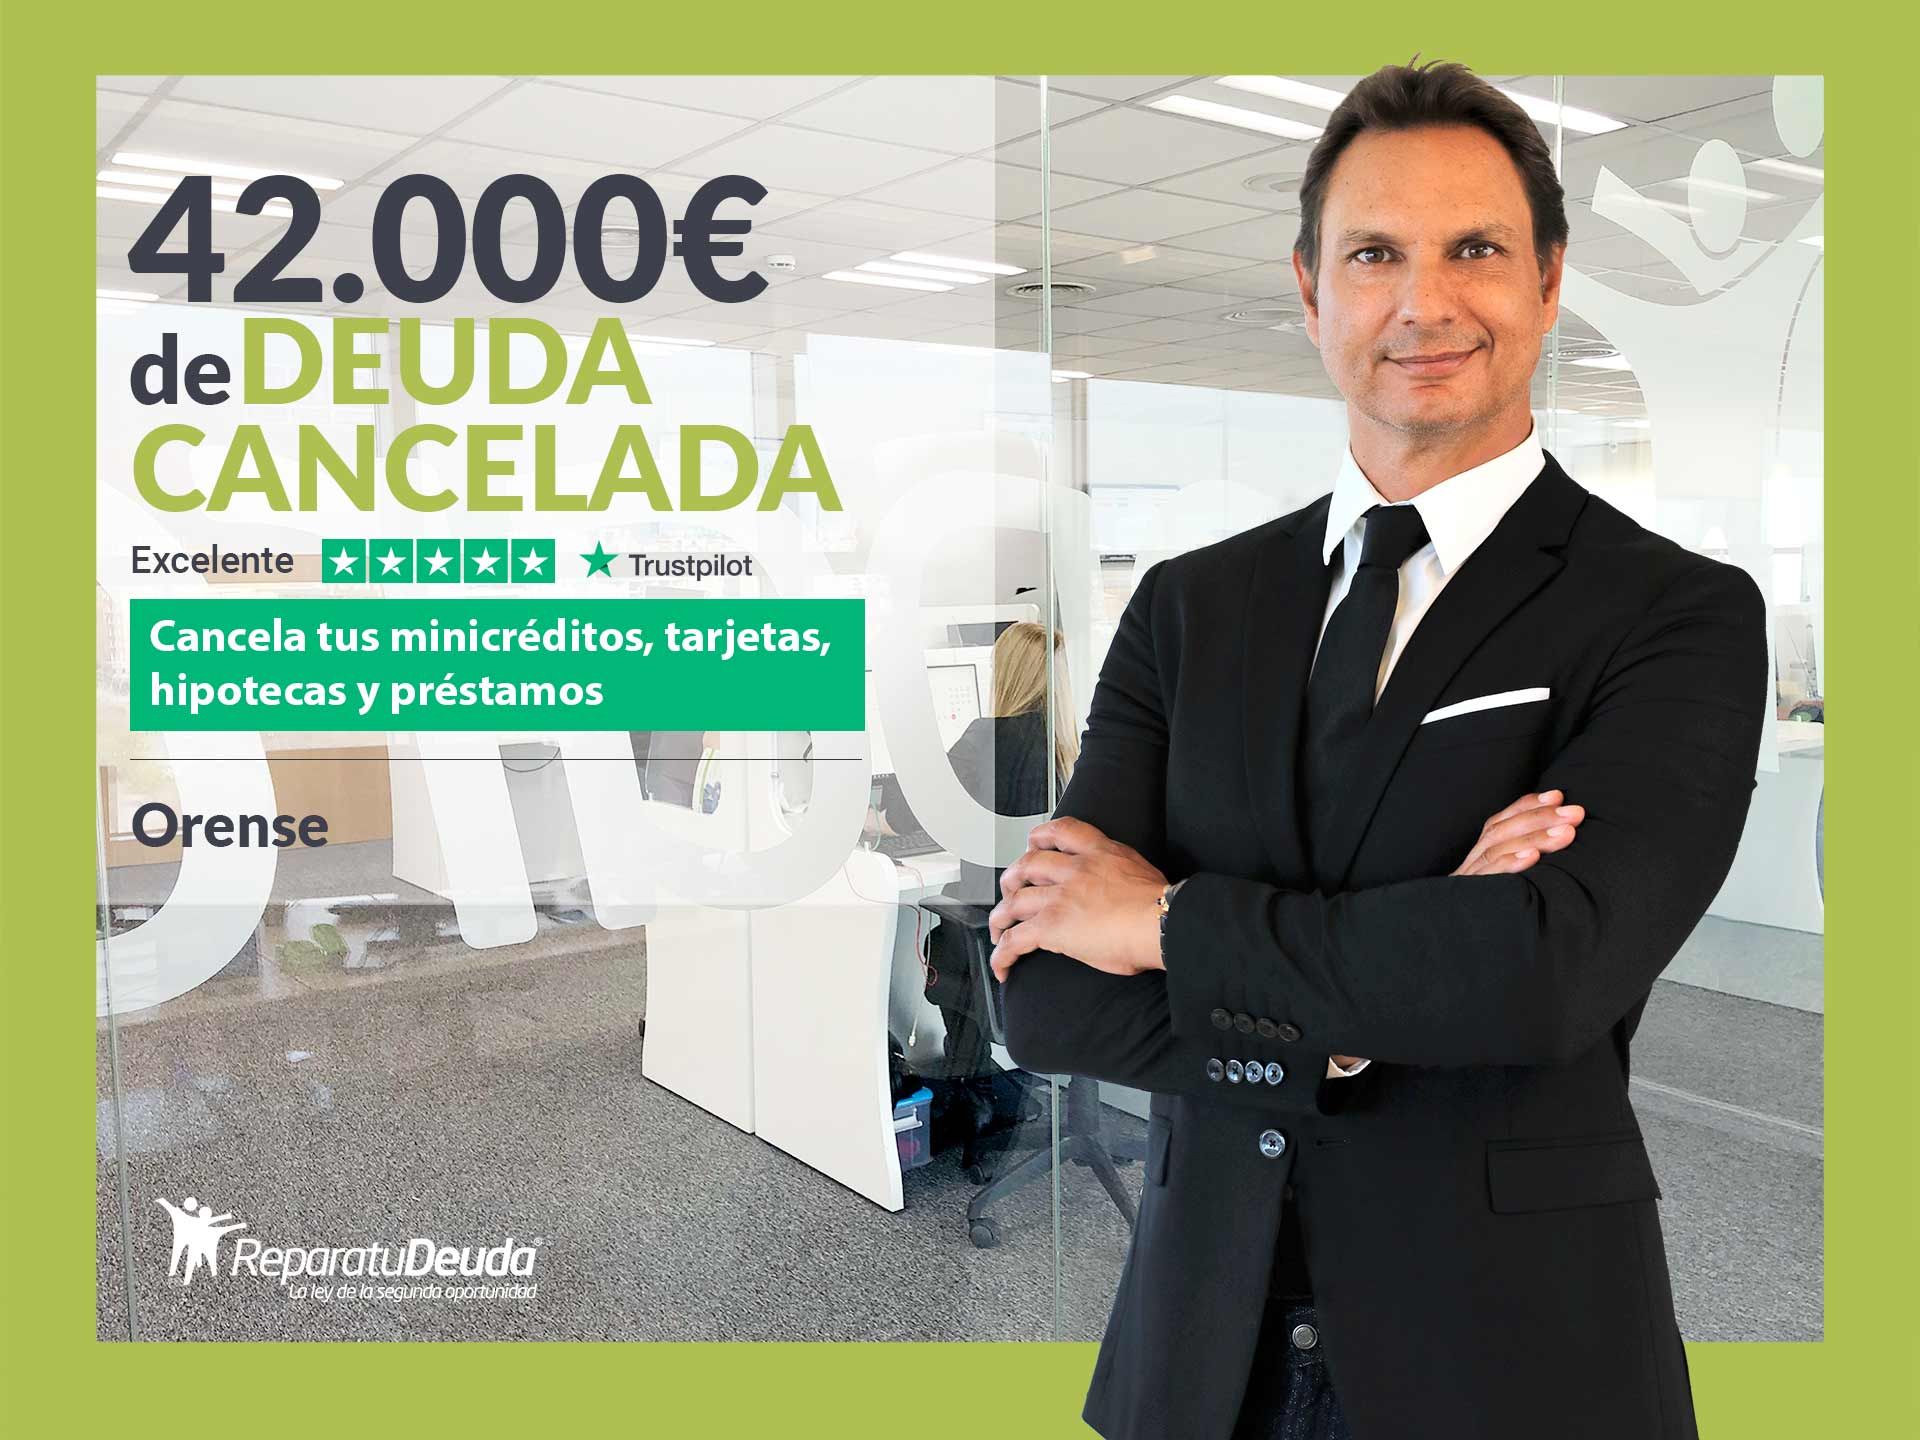 Repara tu Deuda Abogados cancela 42.000? en Ourense (Galicia) con la Ley de Segunda Oportunidad